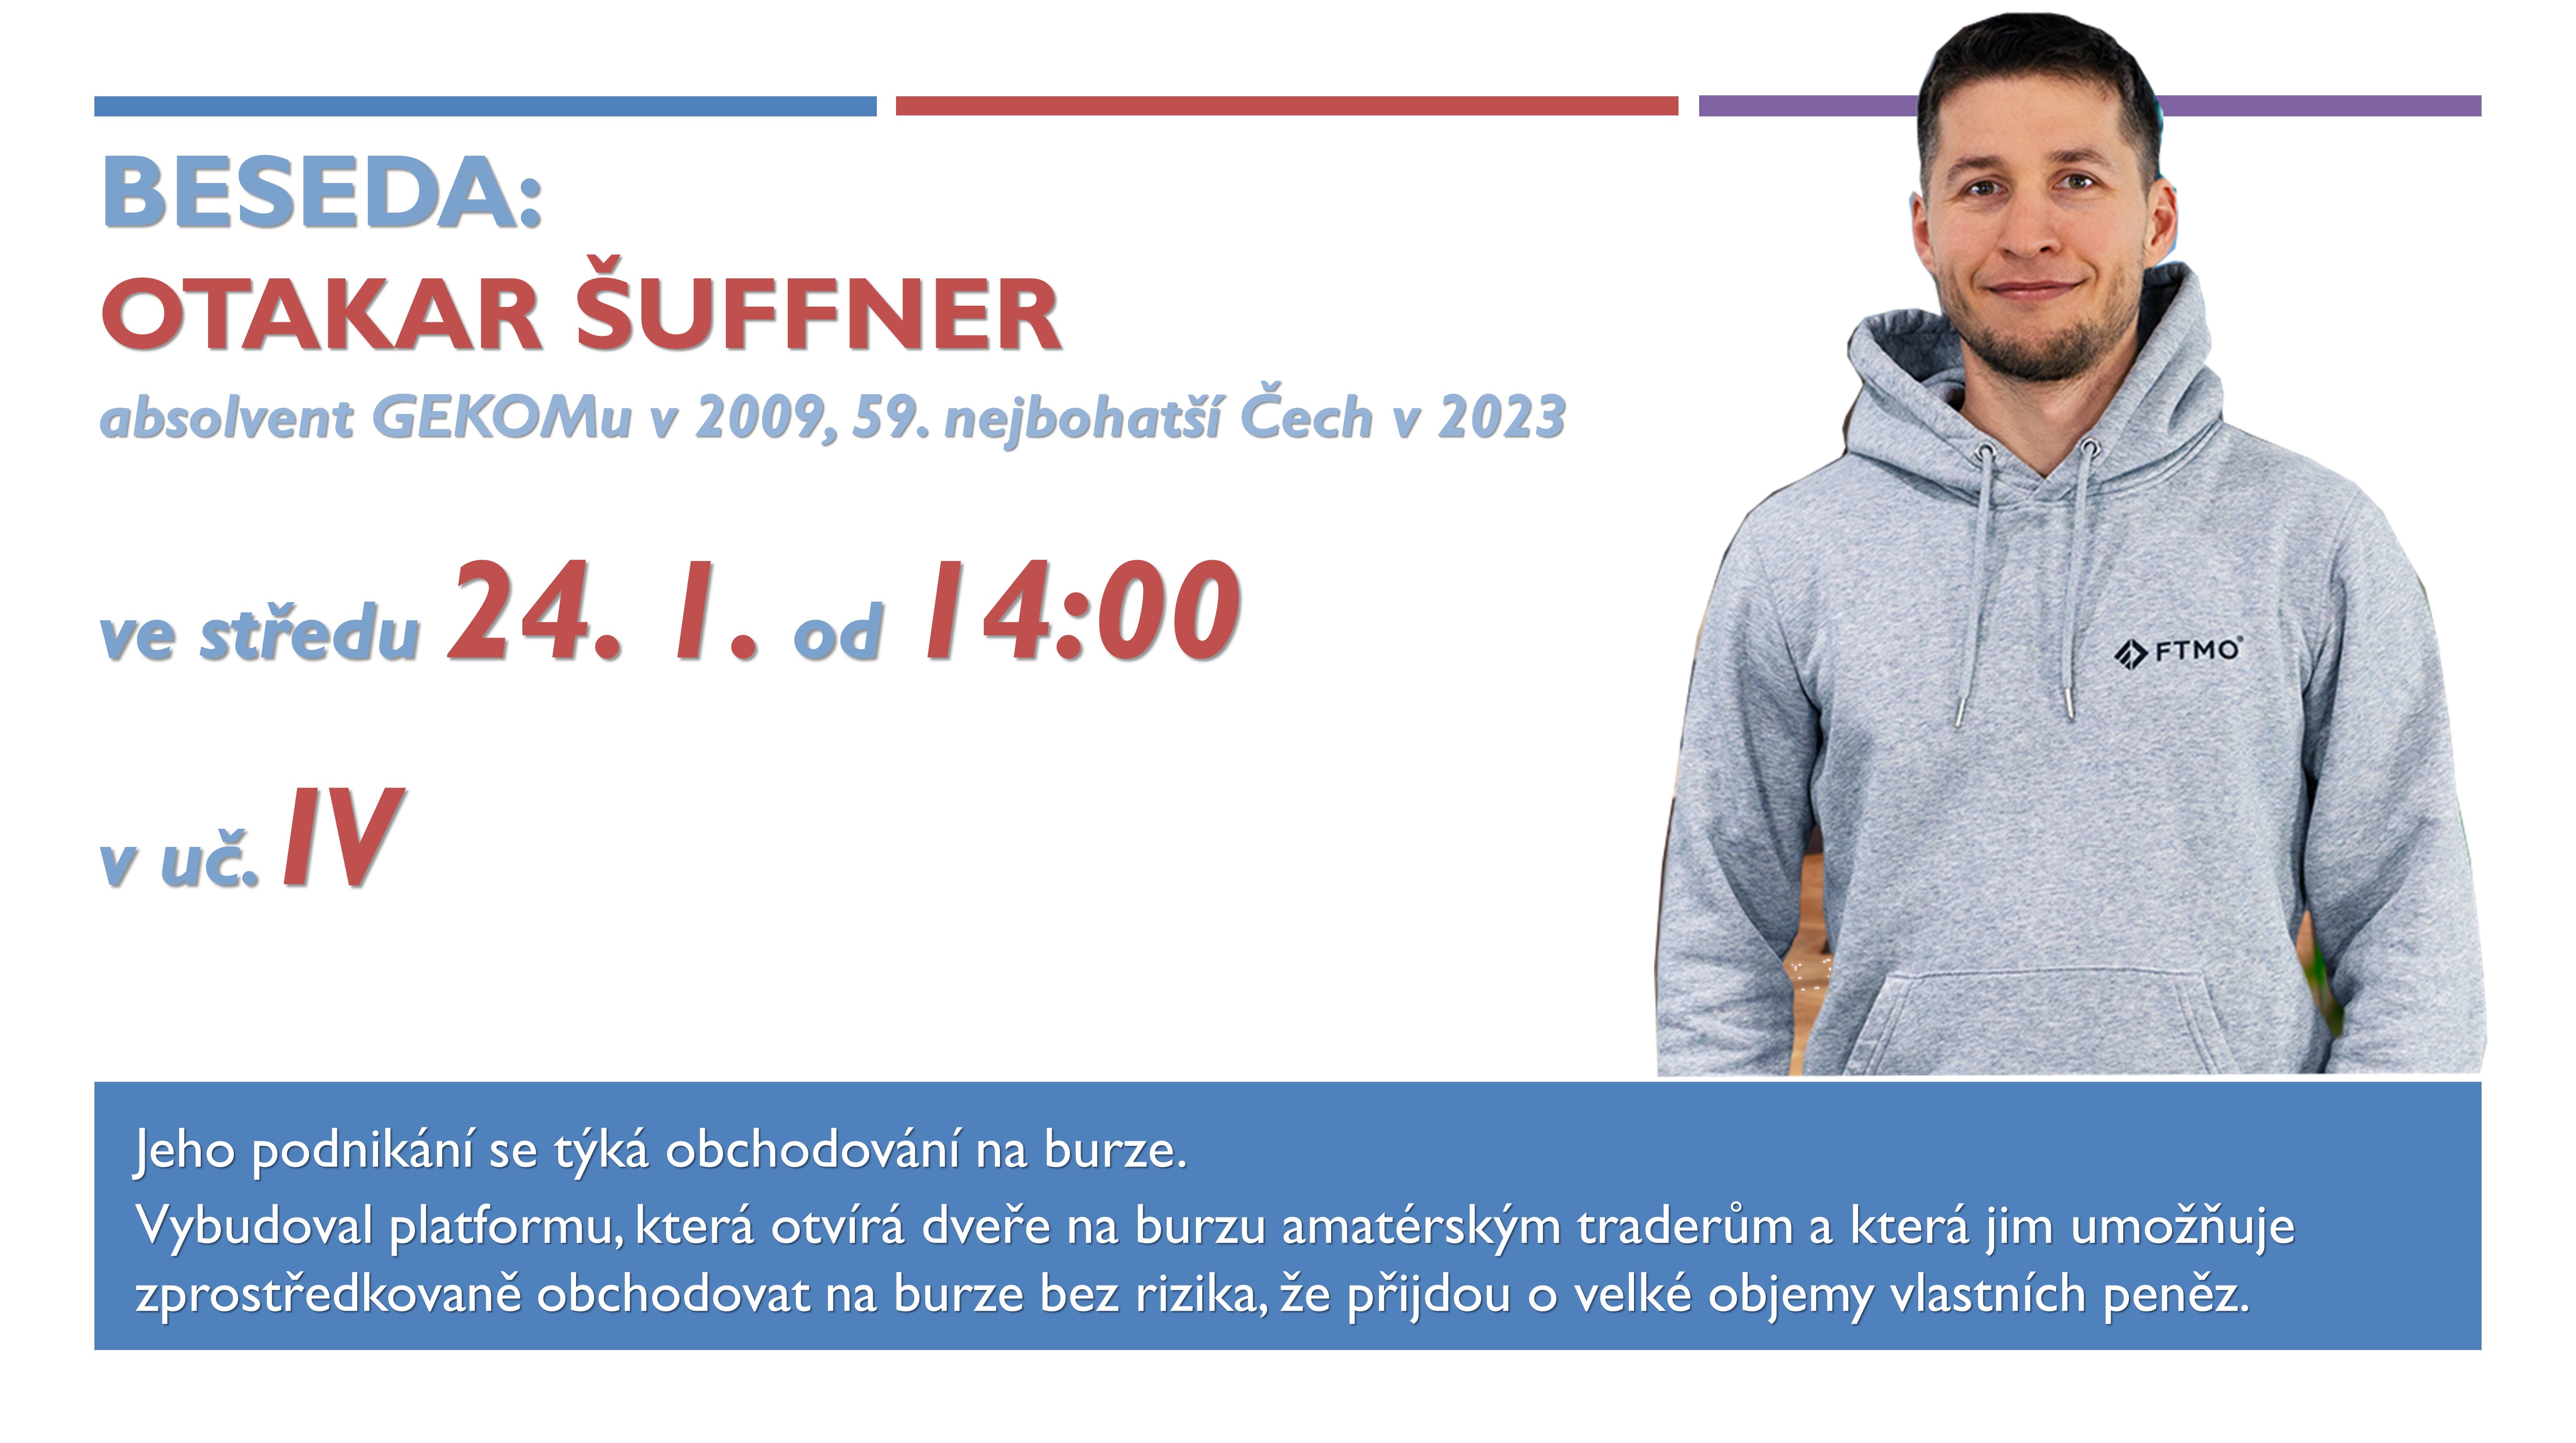 Beseda - Otakar Šuffner